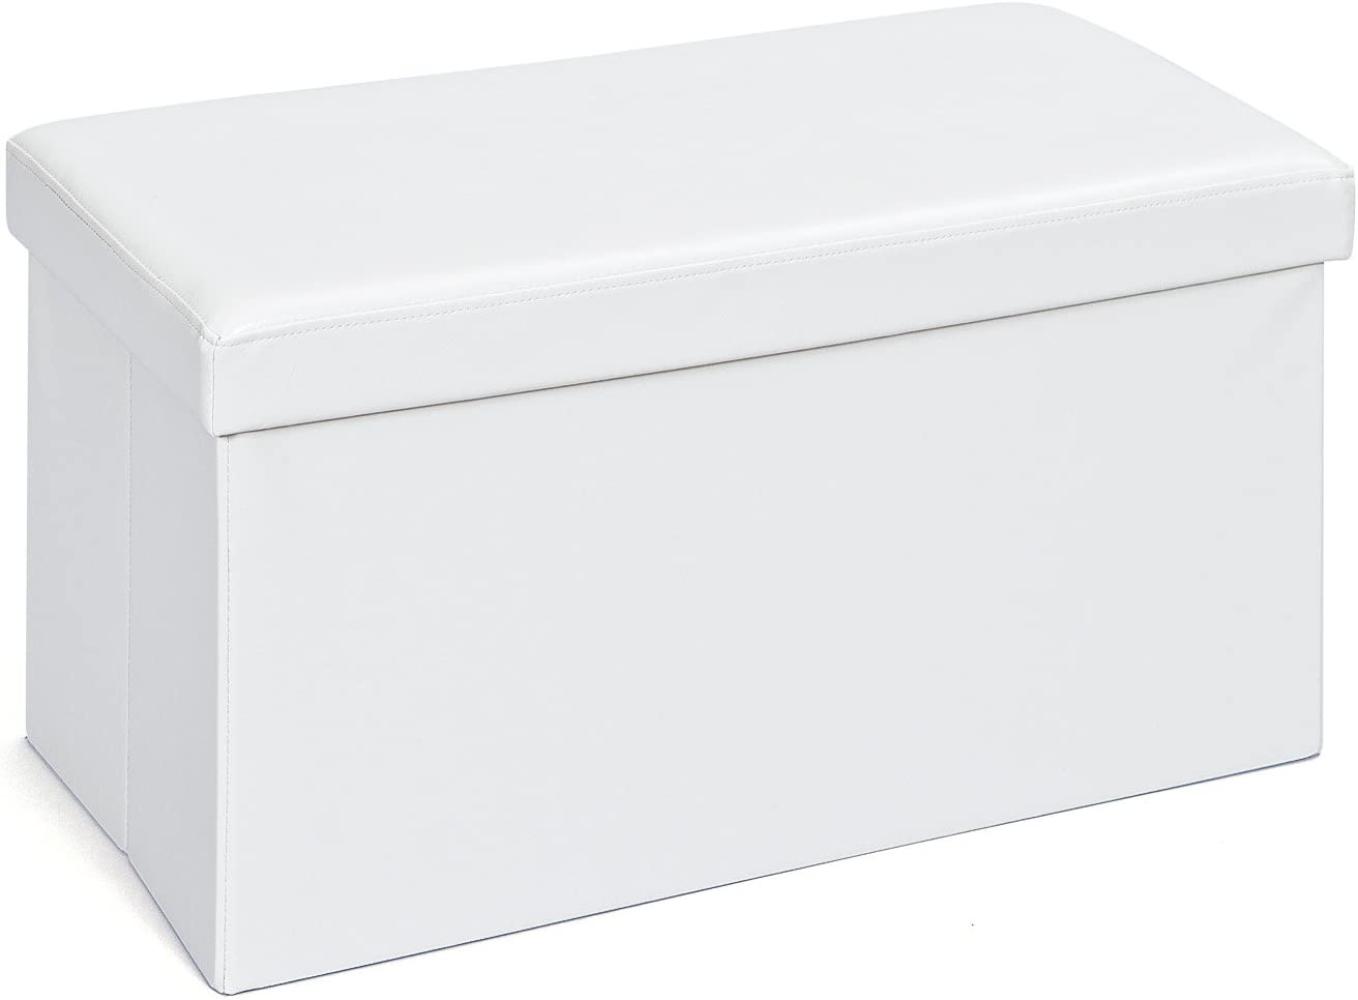 Inter Link Faltbox Setto groß Weiß mit Sitzpolster, 76x38x38 cm Bild 1